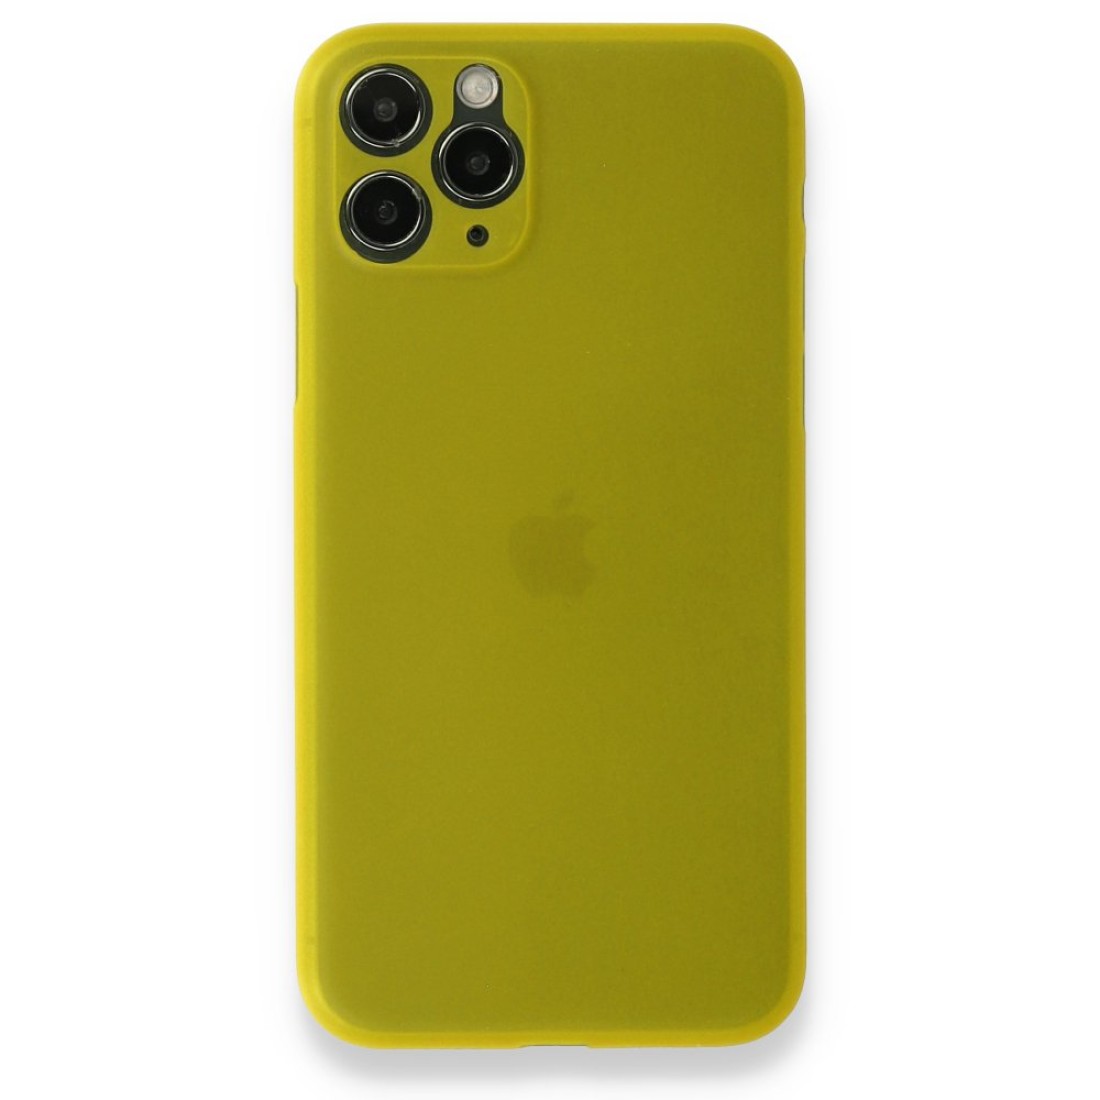 Apple iPhone 11 Pro Kılıf PP Ultra İnce Kapak - Sarı